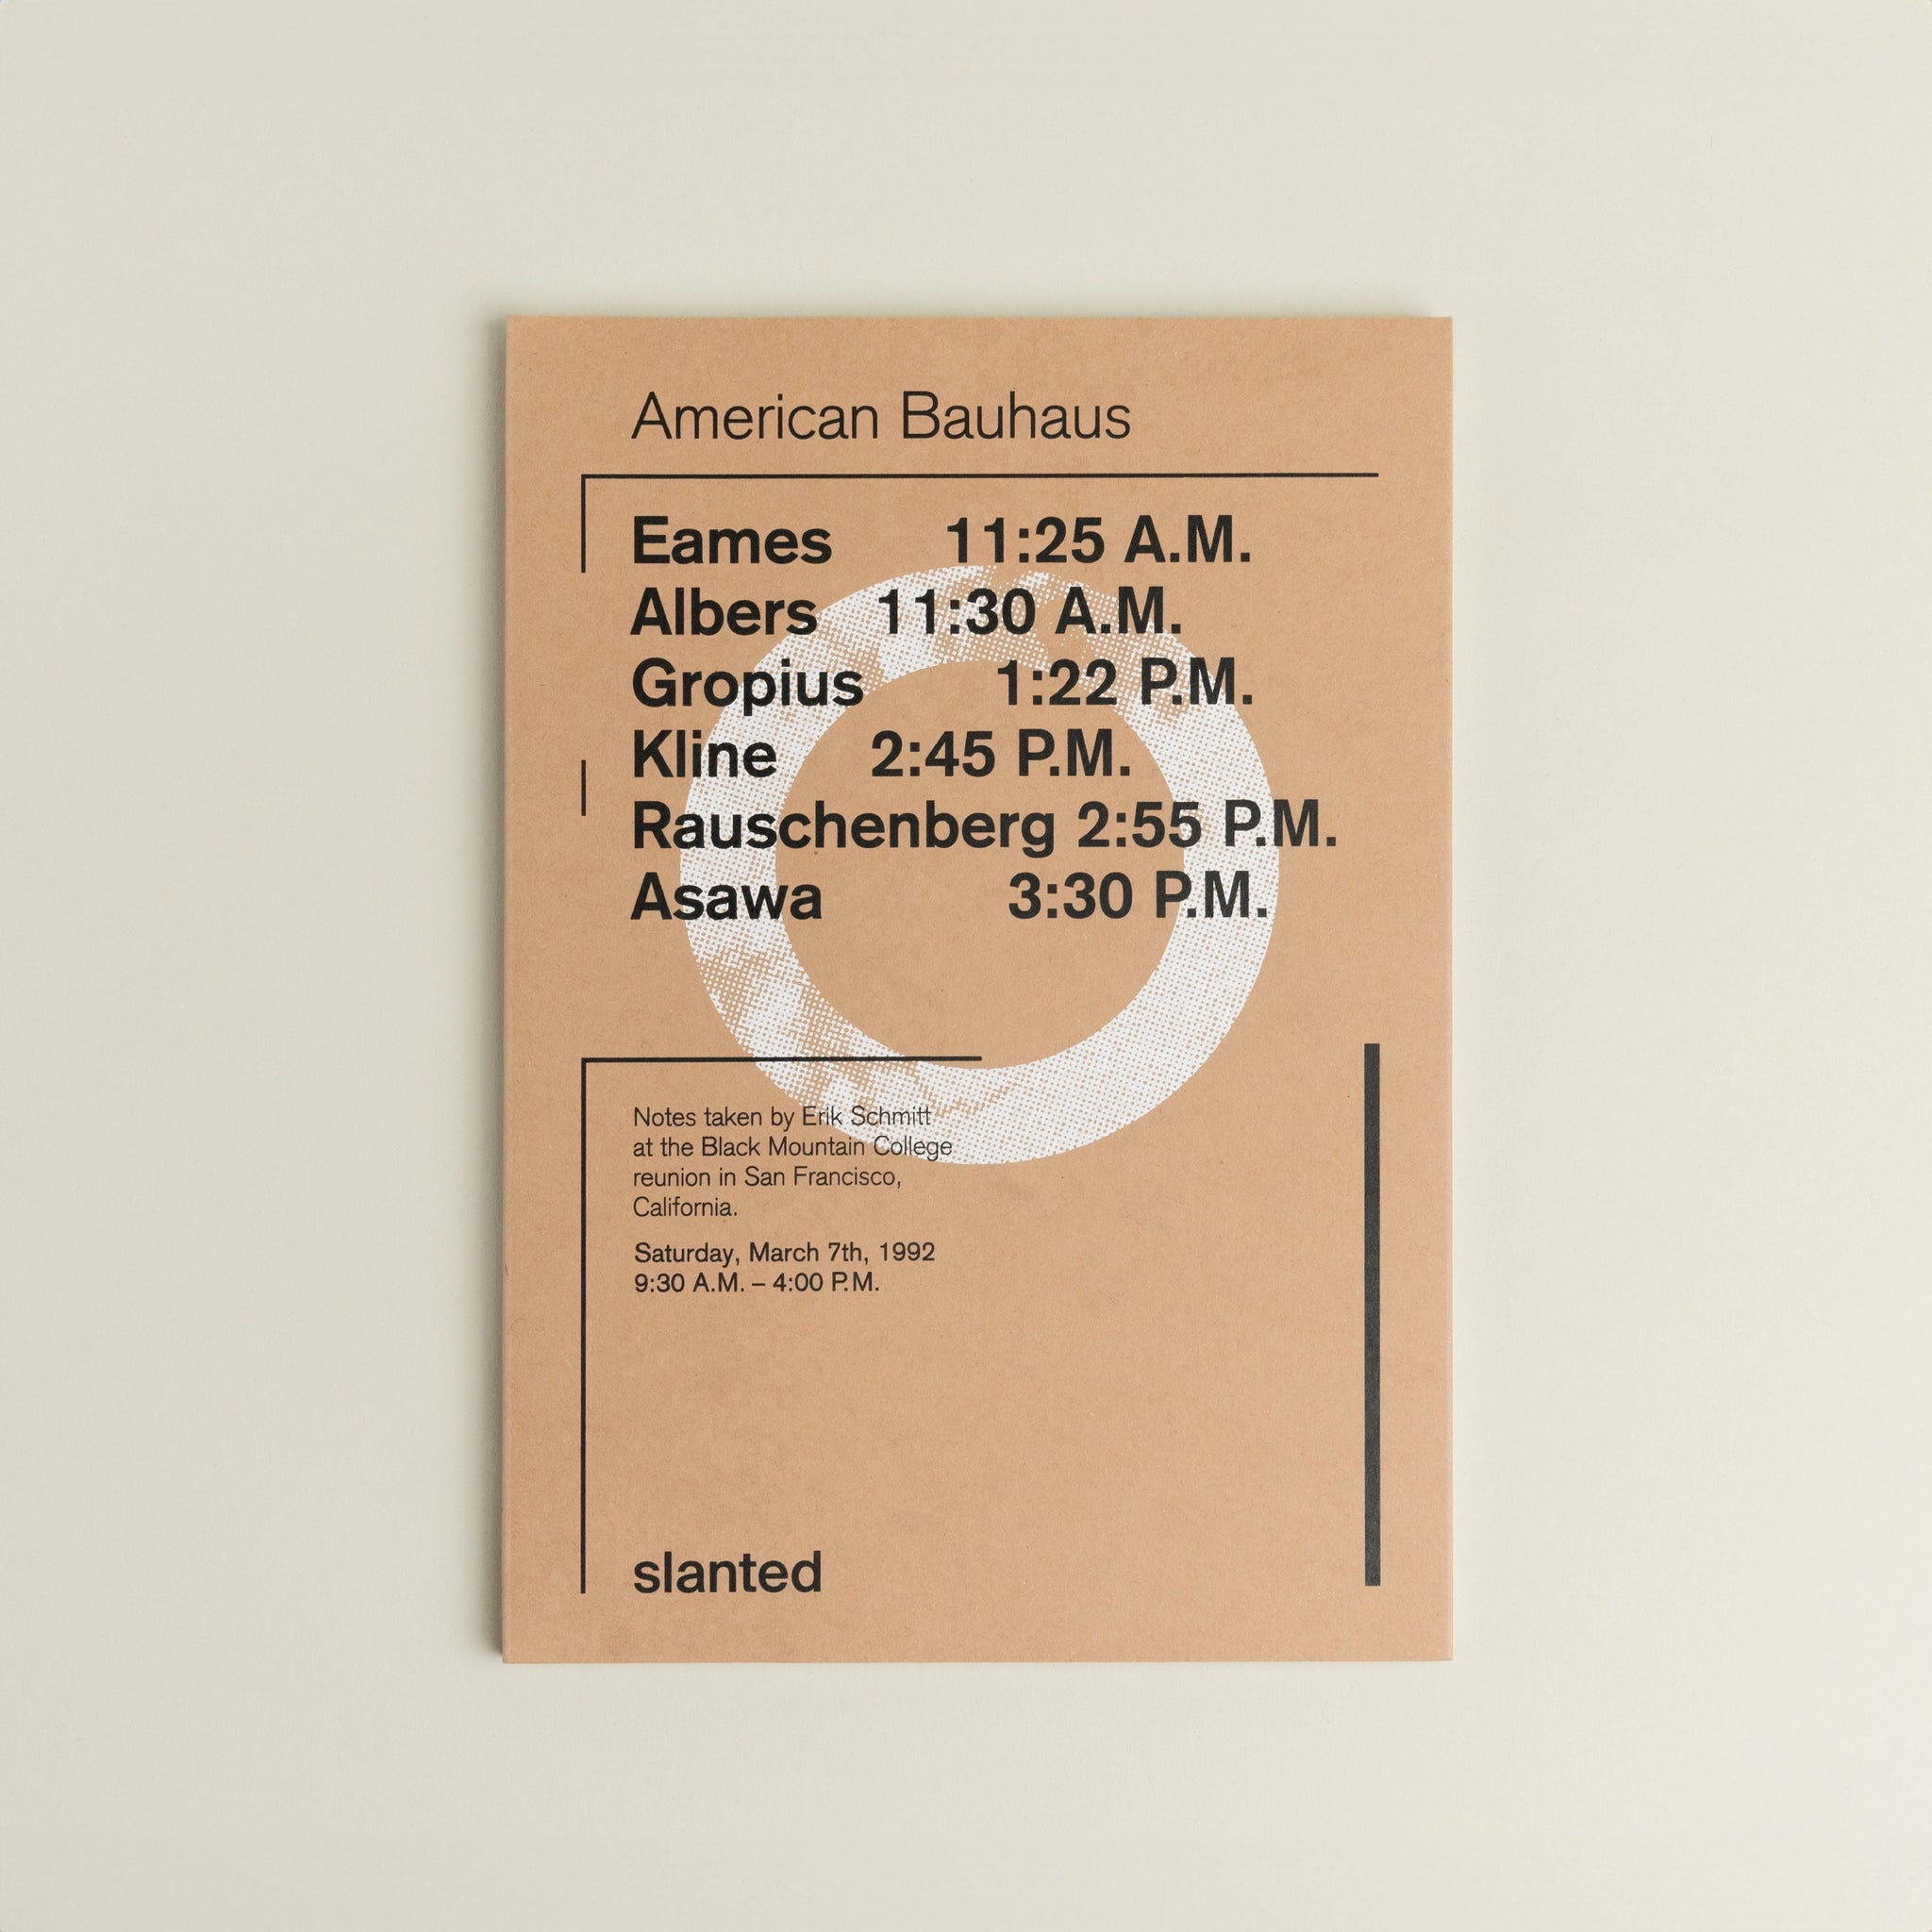 American Bauhaus